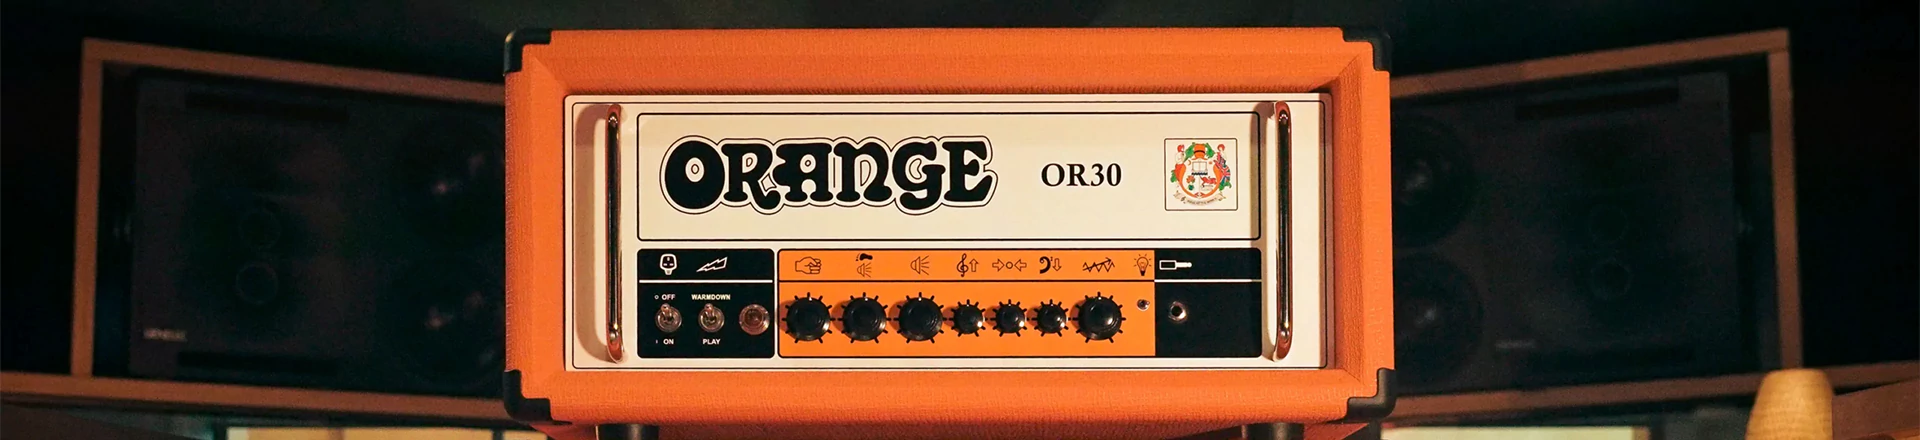 Orange OR30 - Trzydzieści bardzo przemyślanych wattów